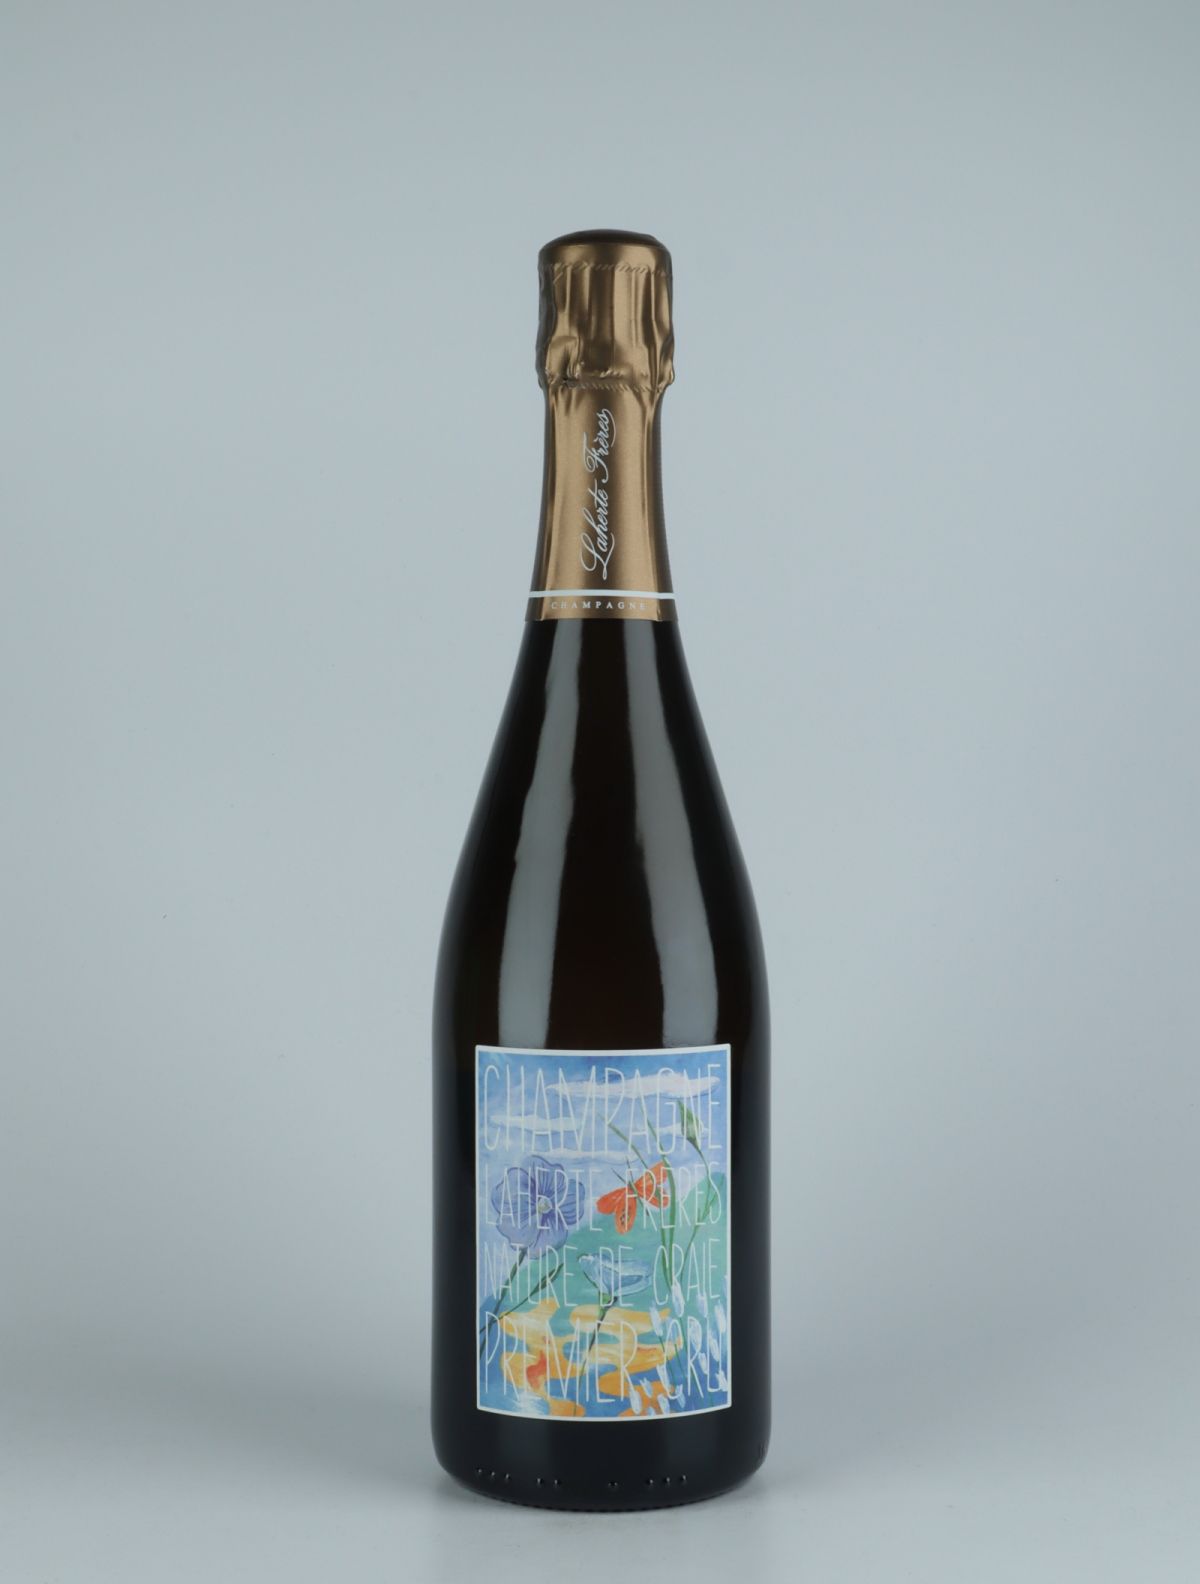 En flaske N.V. Blanc de Blancs 1. Cru - Nature de Craie - Brut Nature Mousserende fra Laherte Frères, Champagne i Frankrig